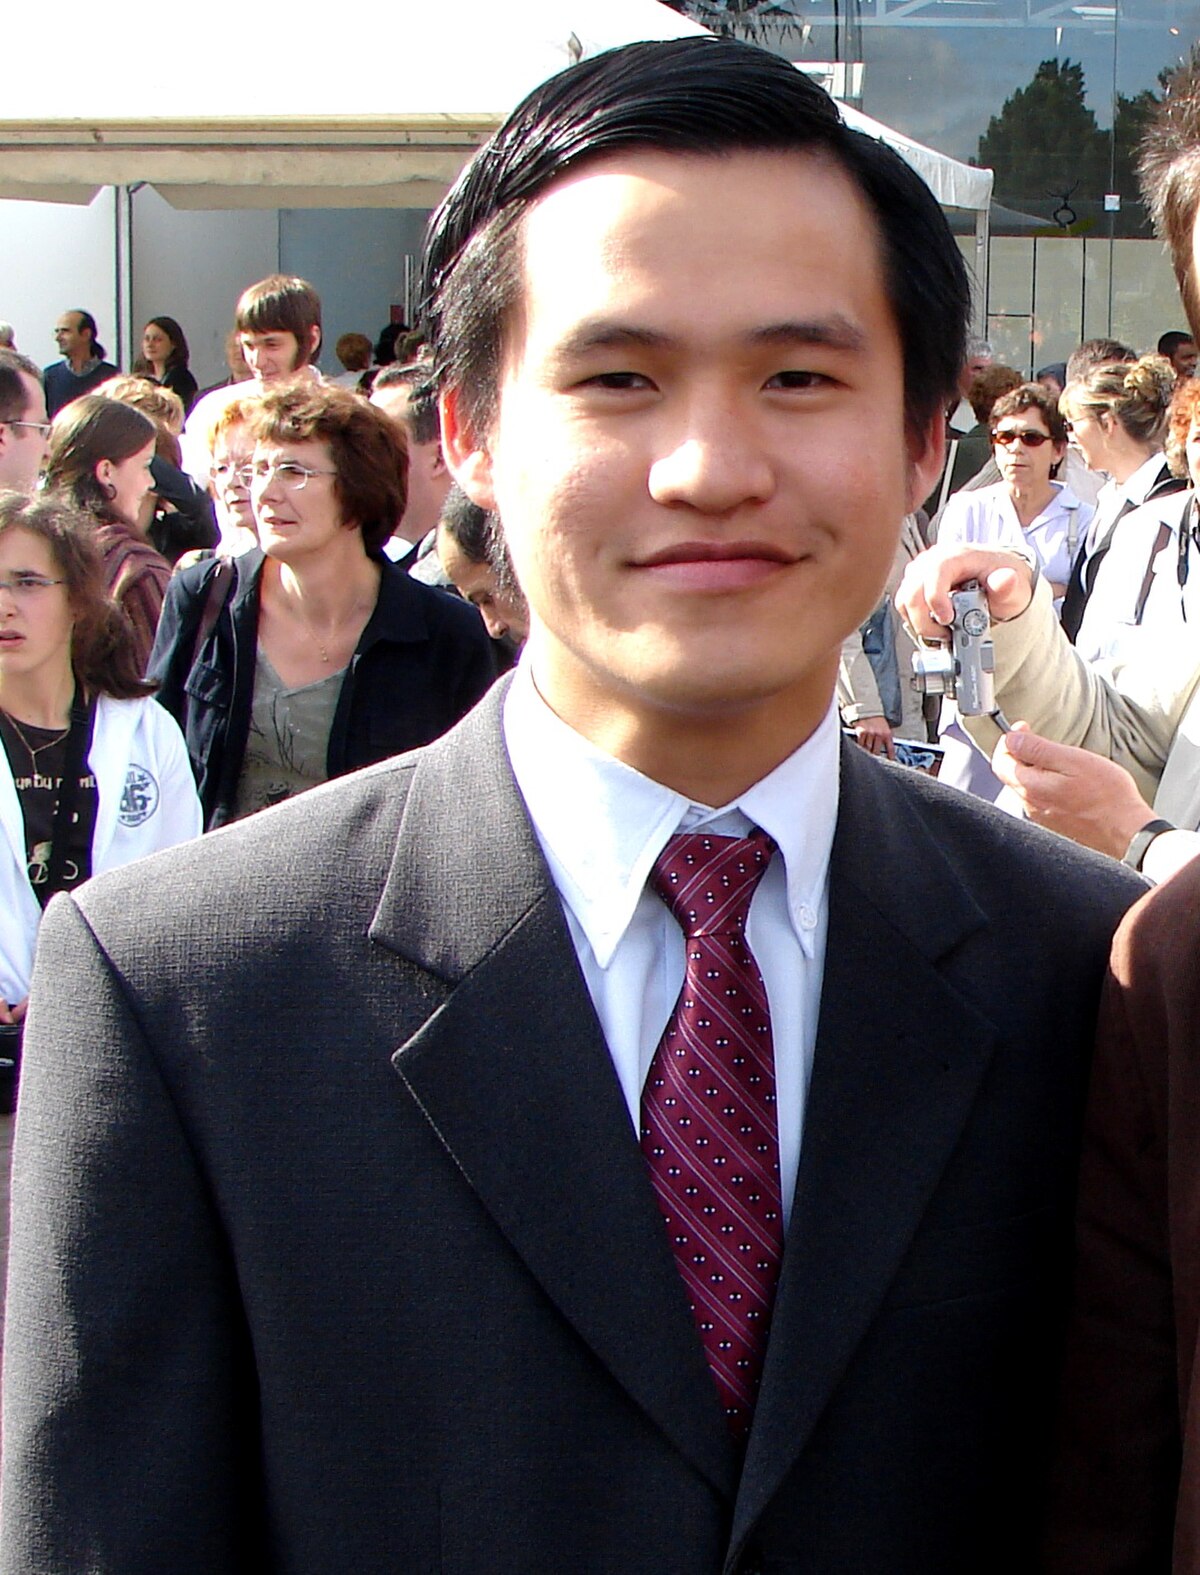 Nguyễn Tiến Trung le 29 juin 2007 à la remise de son diplôme par l'INSA de Rennes.